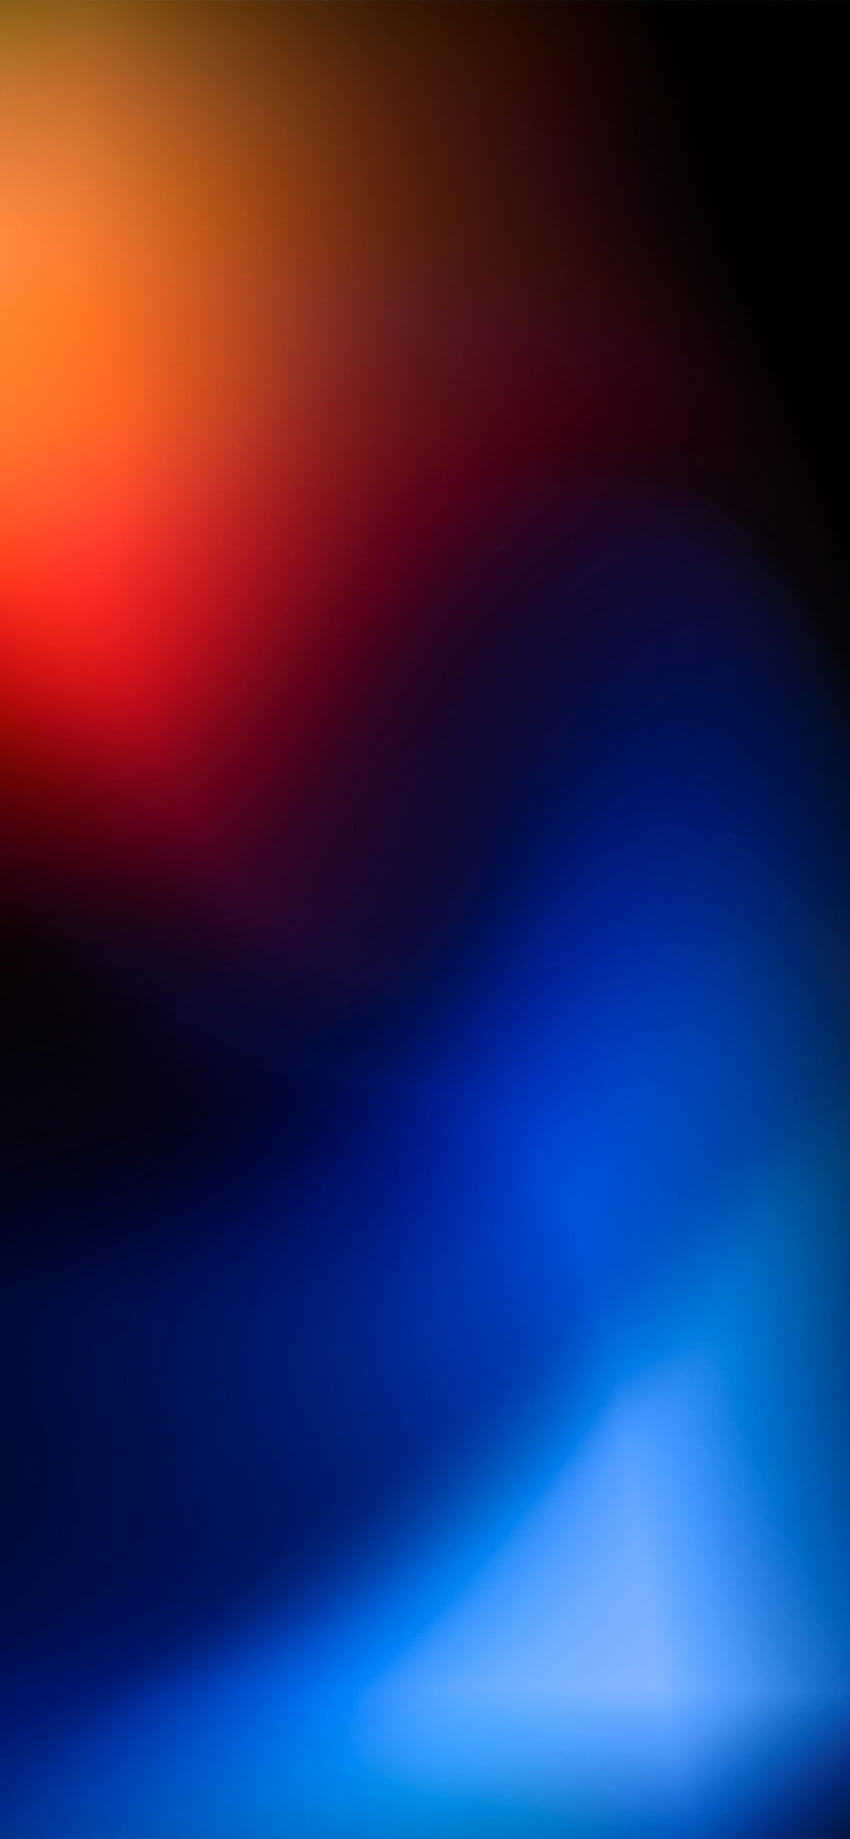 iPhone'da @Hk3ToN tarafından turuncudan maviye ve siyaha gradyan, siyah ve turuncu iphone HD telefon duvar kağıdı